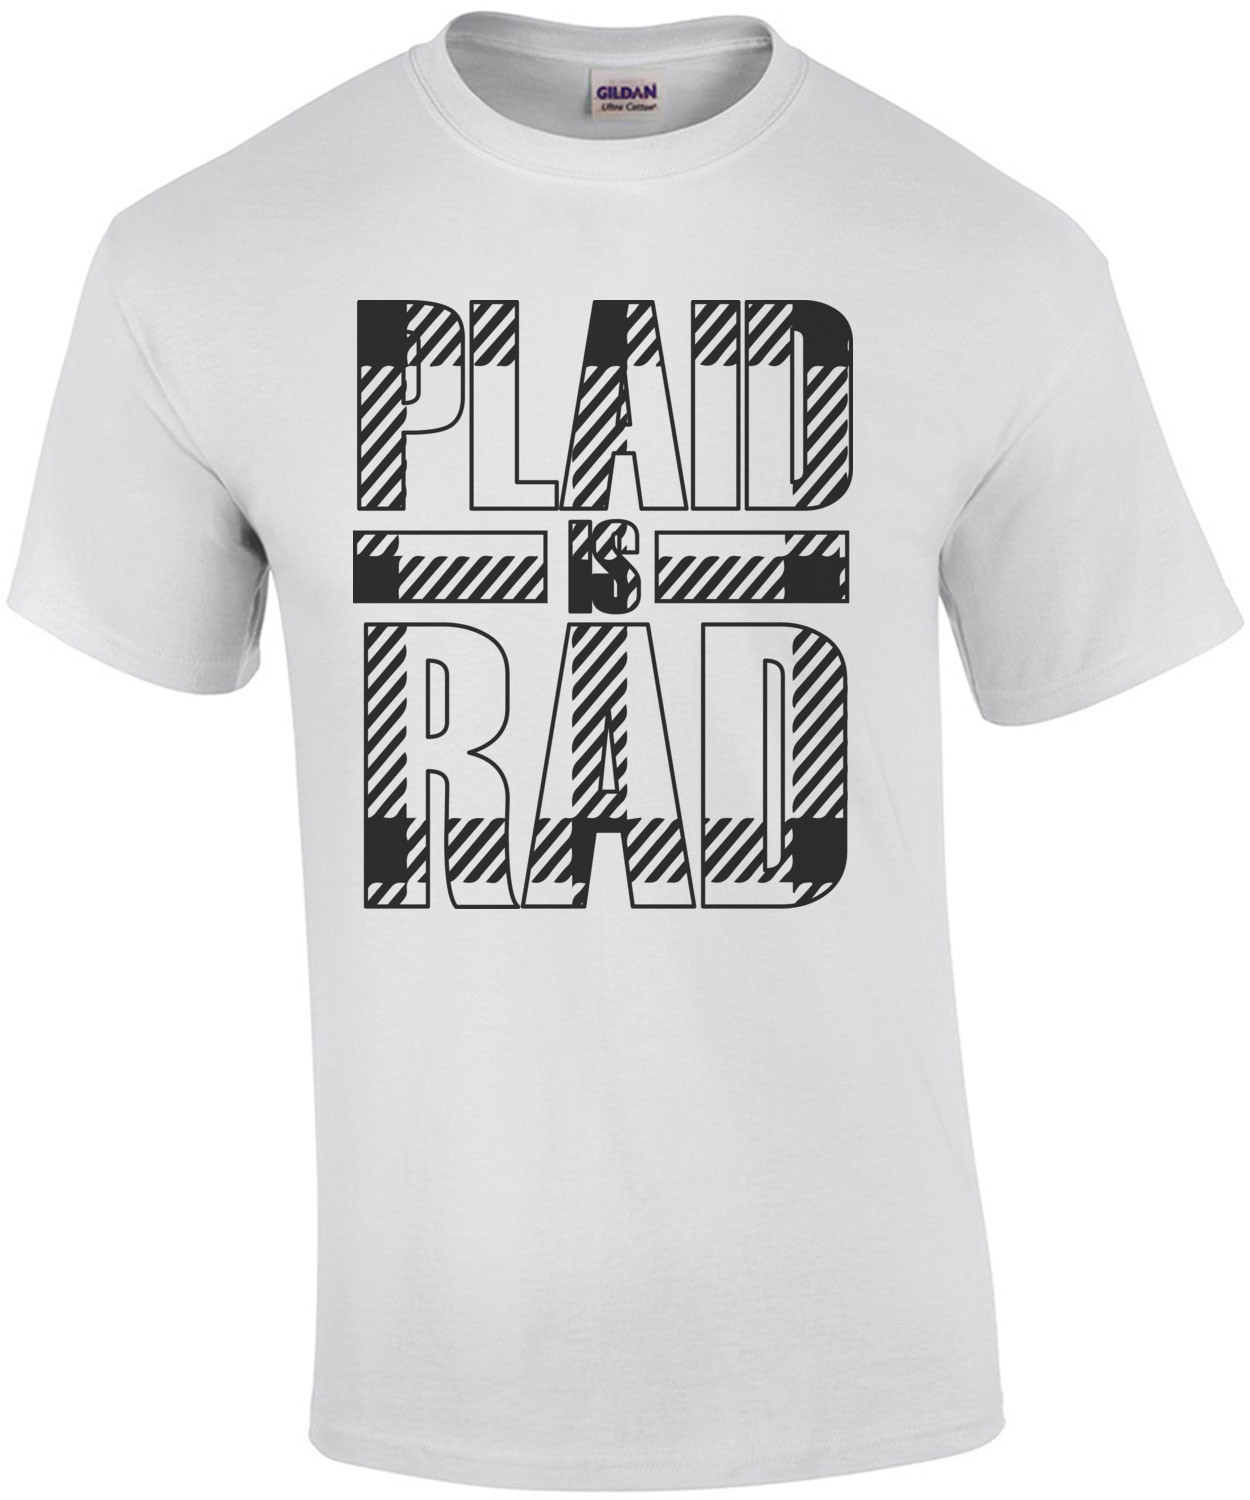 plaid is rad t-shirt